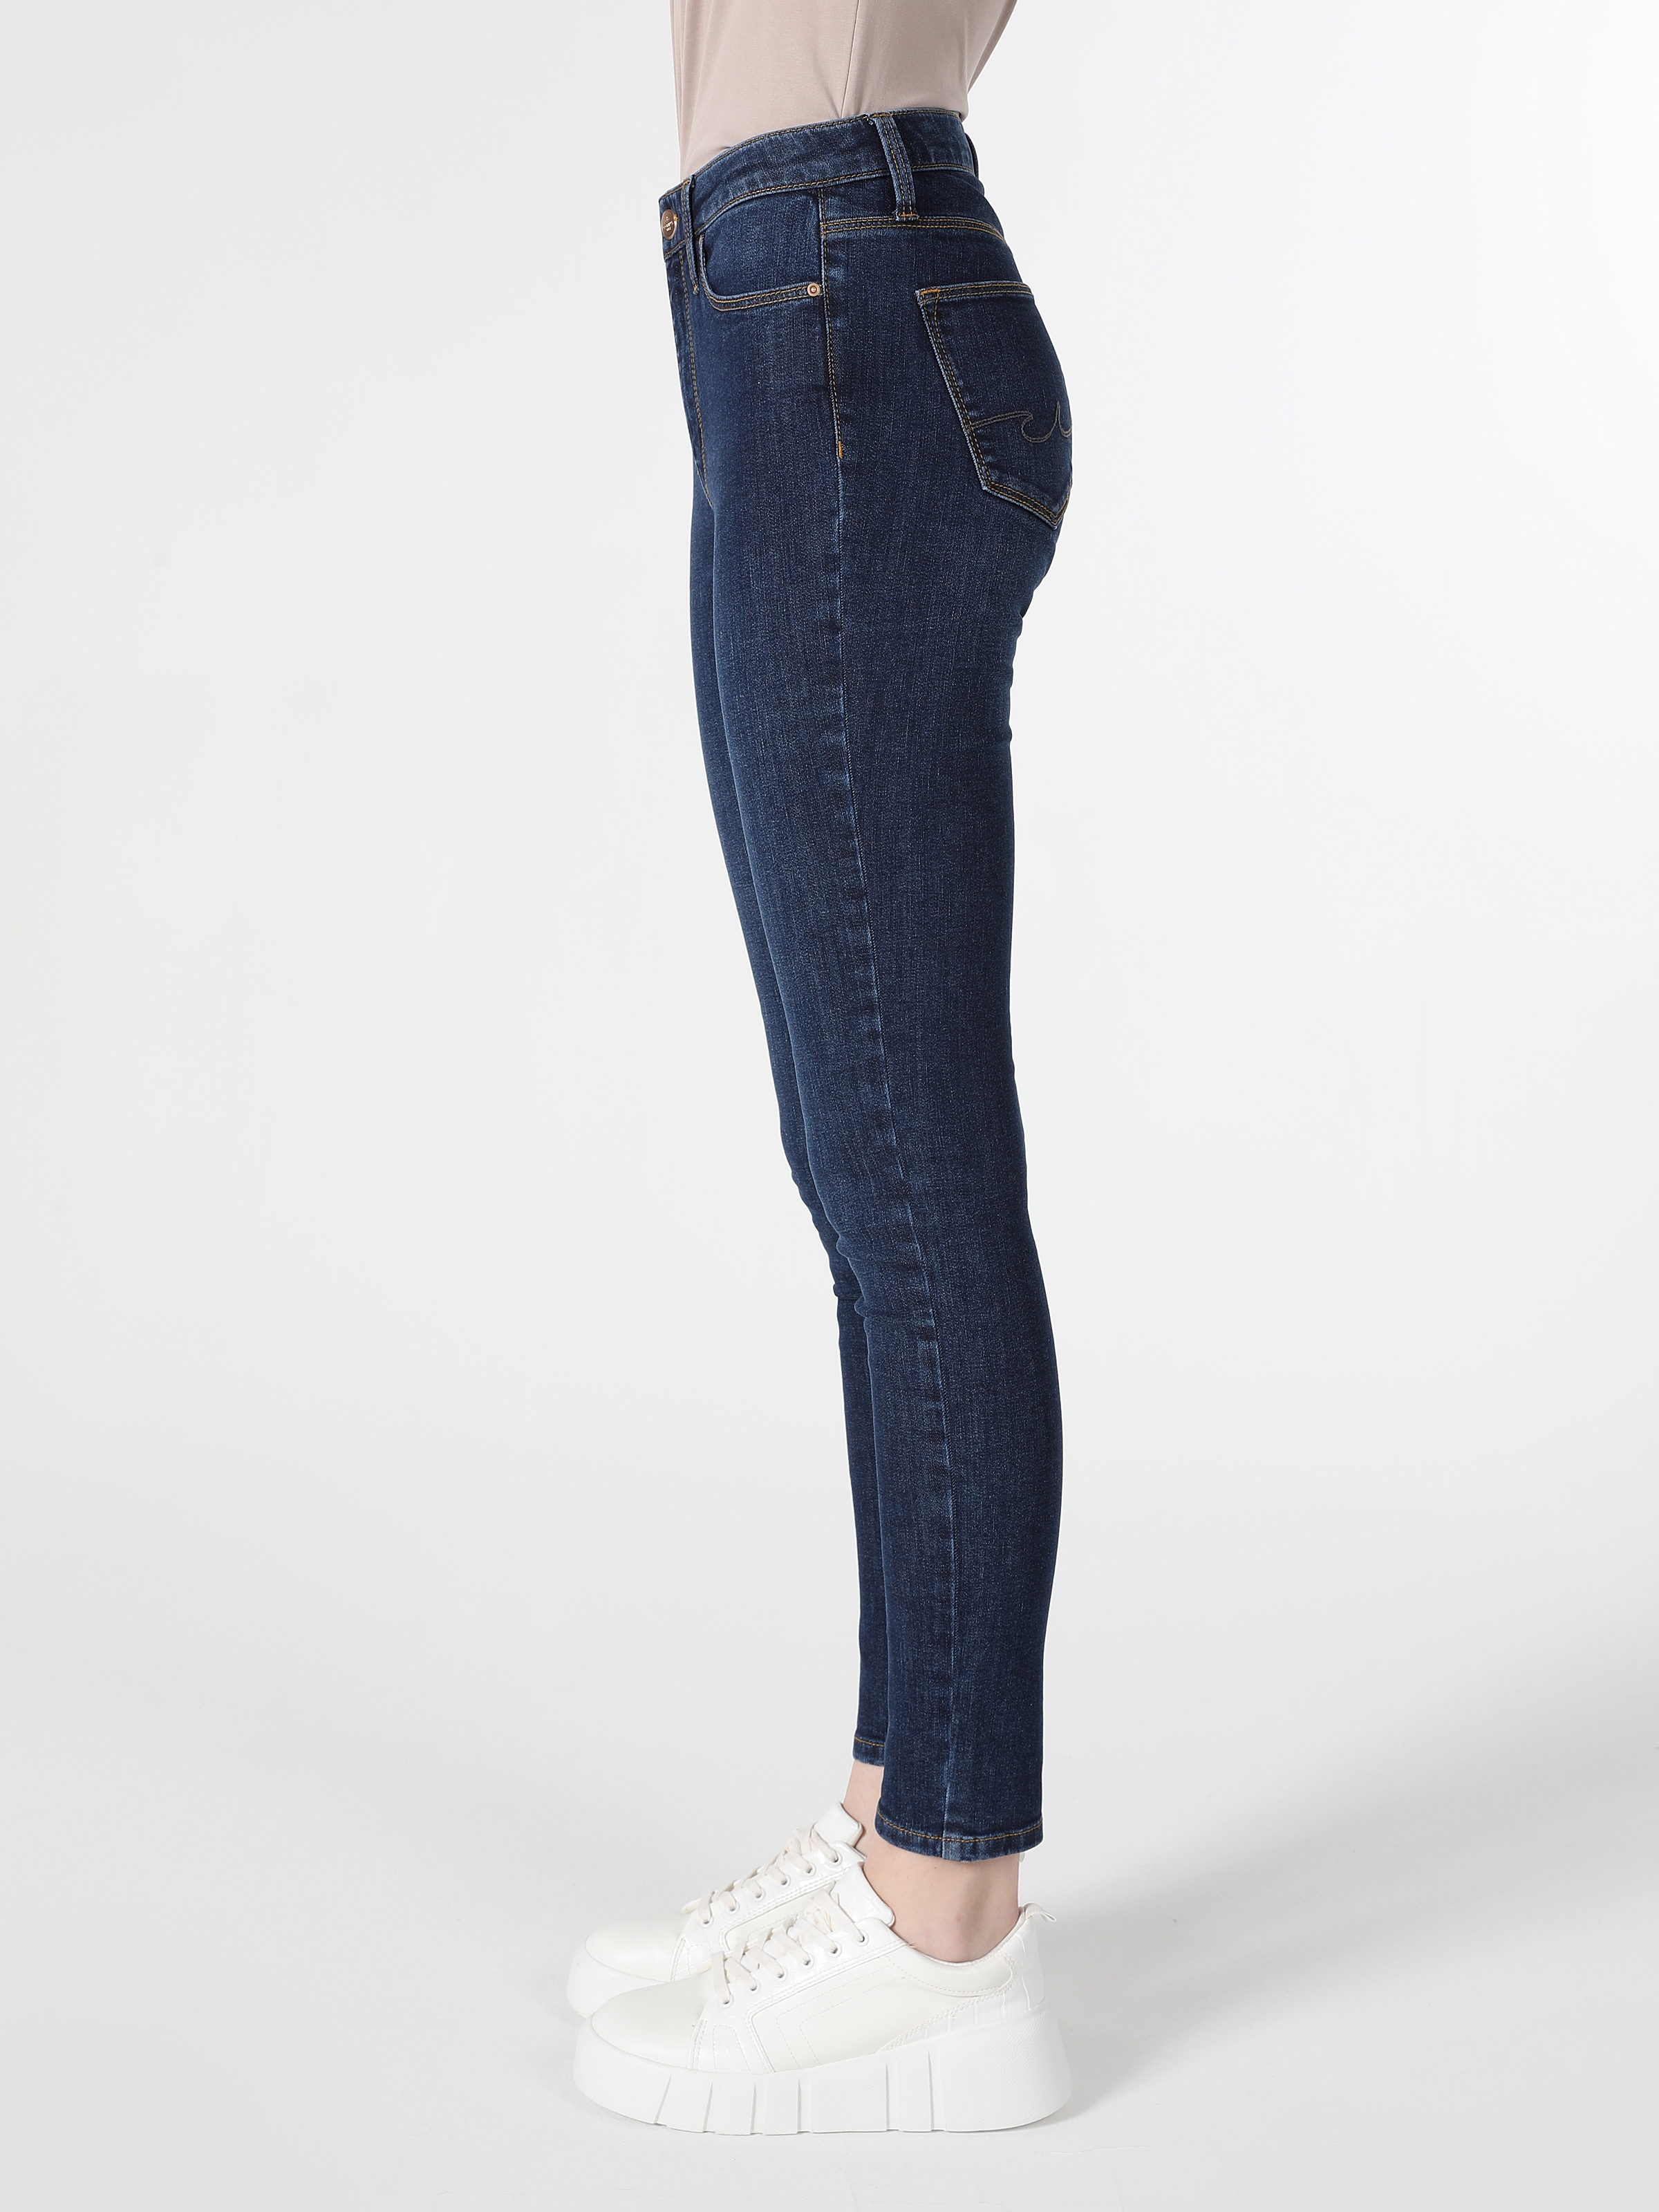 Afficher les détails de 759 Lara Pantalon En Jean Taille Moyenne À Jambe Étroite Coupe Super Slim Bleu Foncé Pour Femme